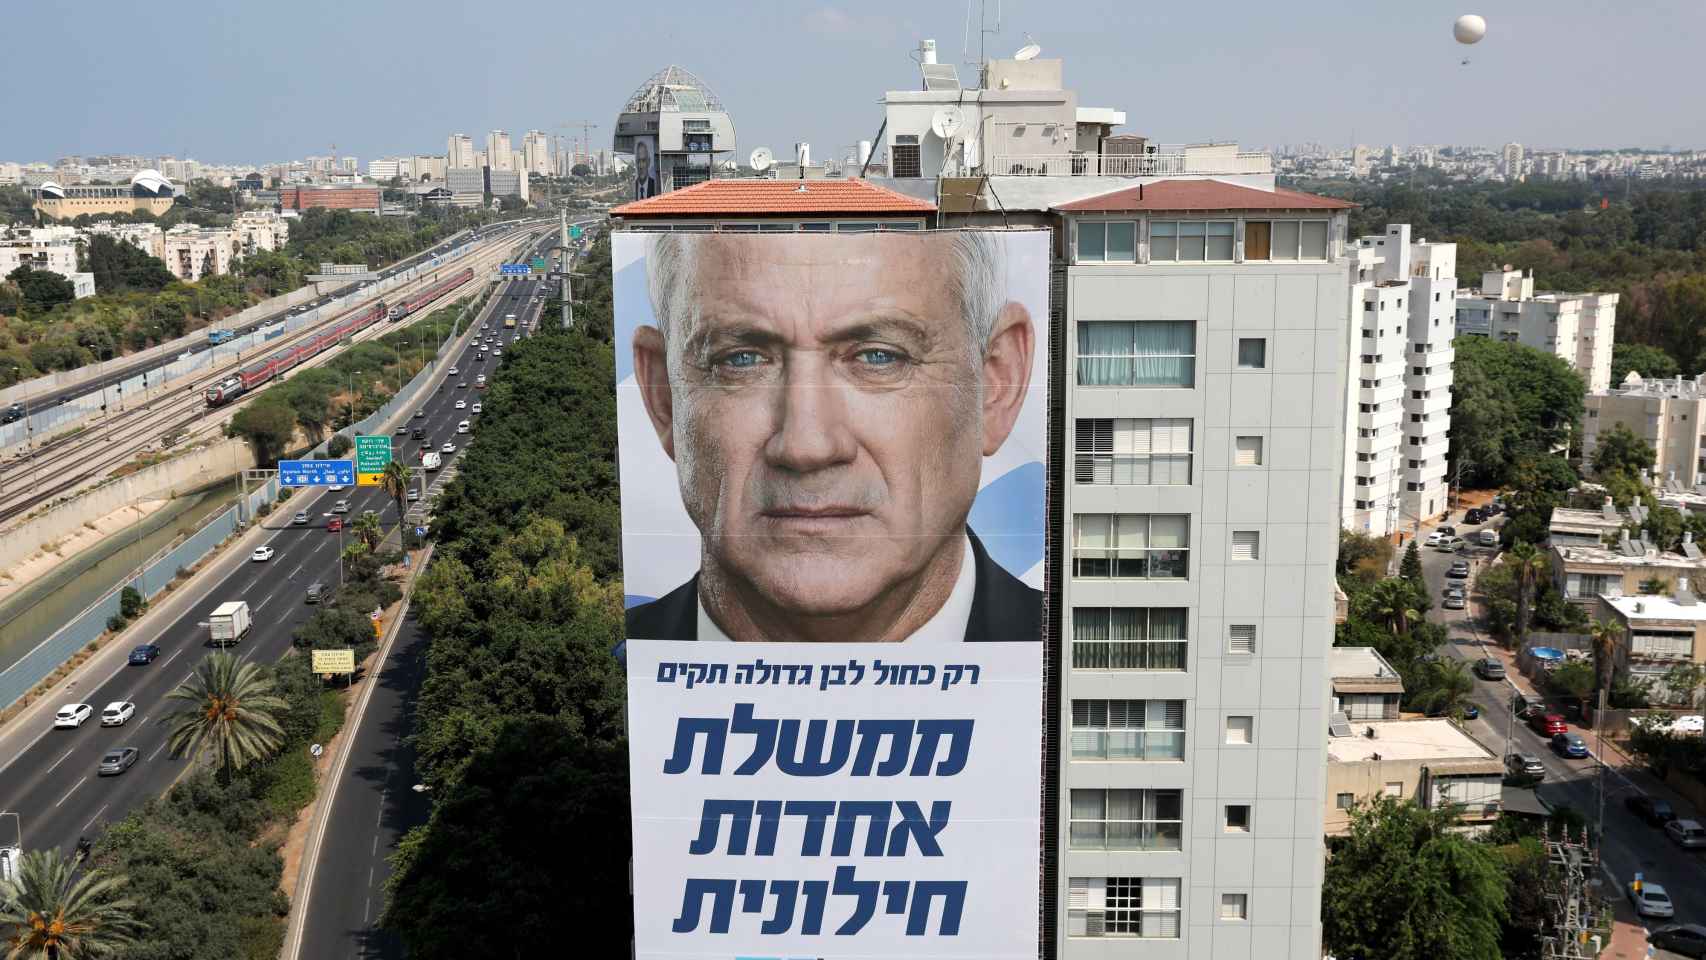 Un gran cartel electoral de Benny Gantz (Azul y Blanco) en Tel Aviv.